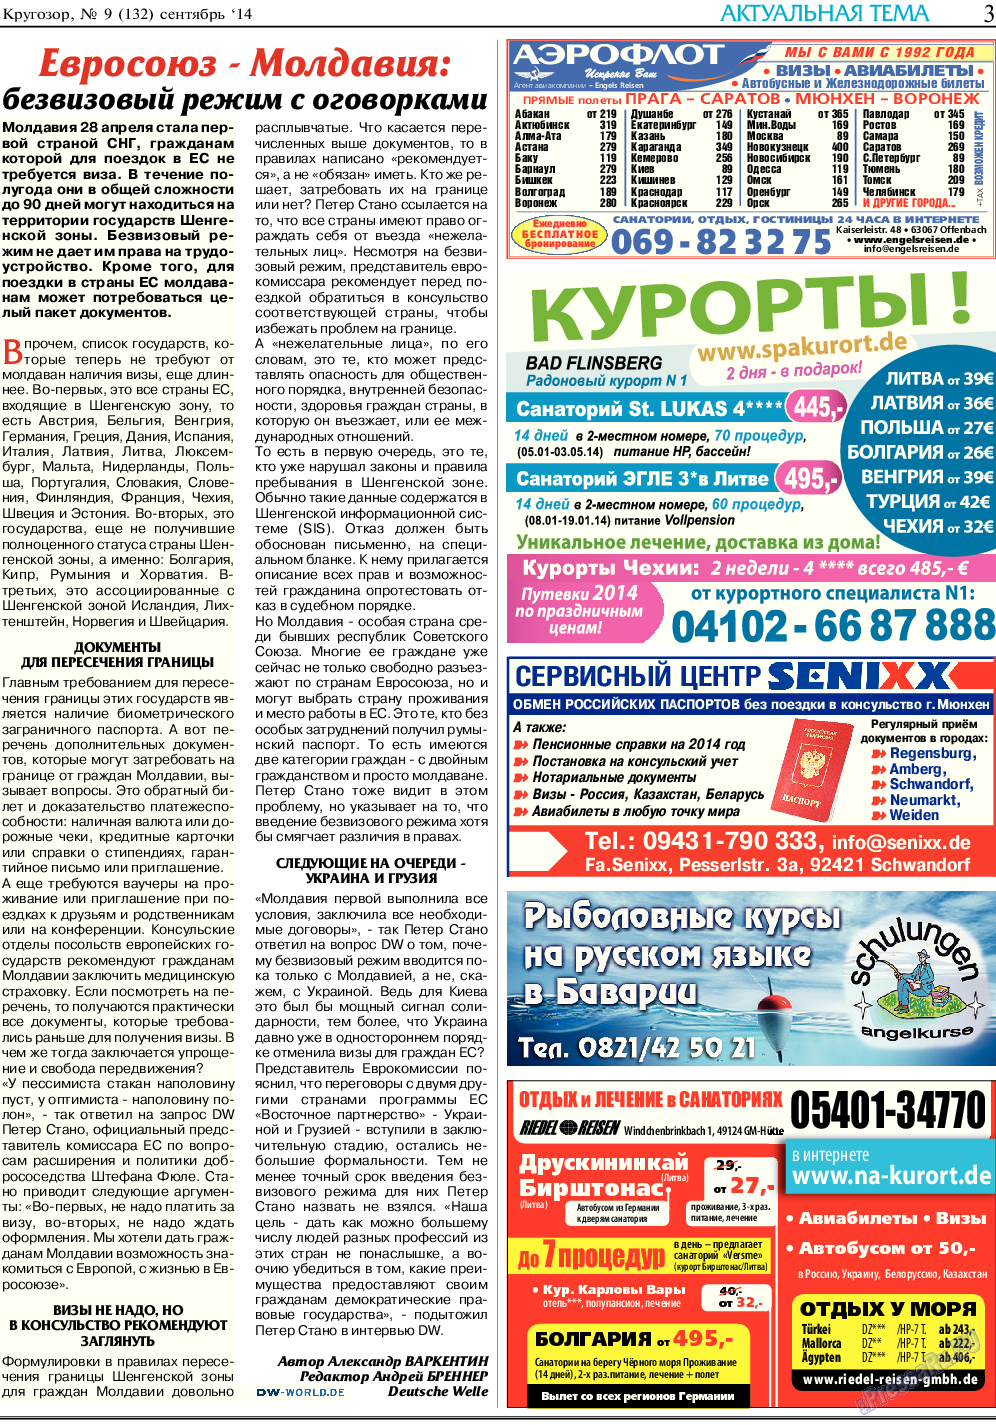 Кругозор (газета). 2014 год, номер 9, стр. 3